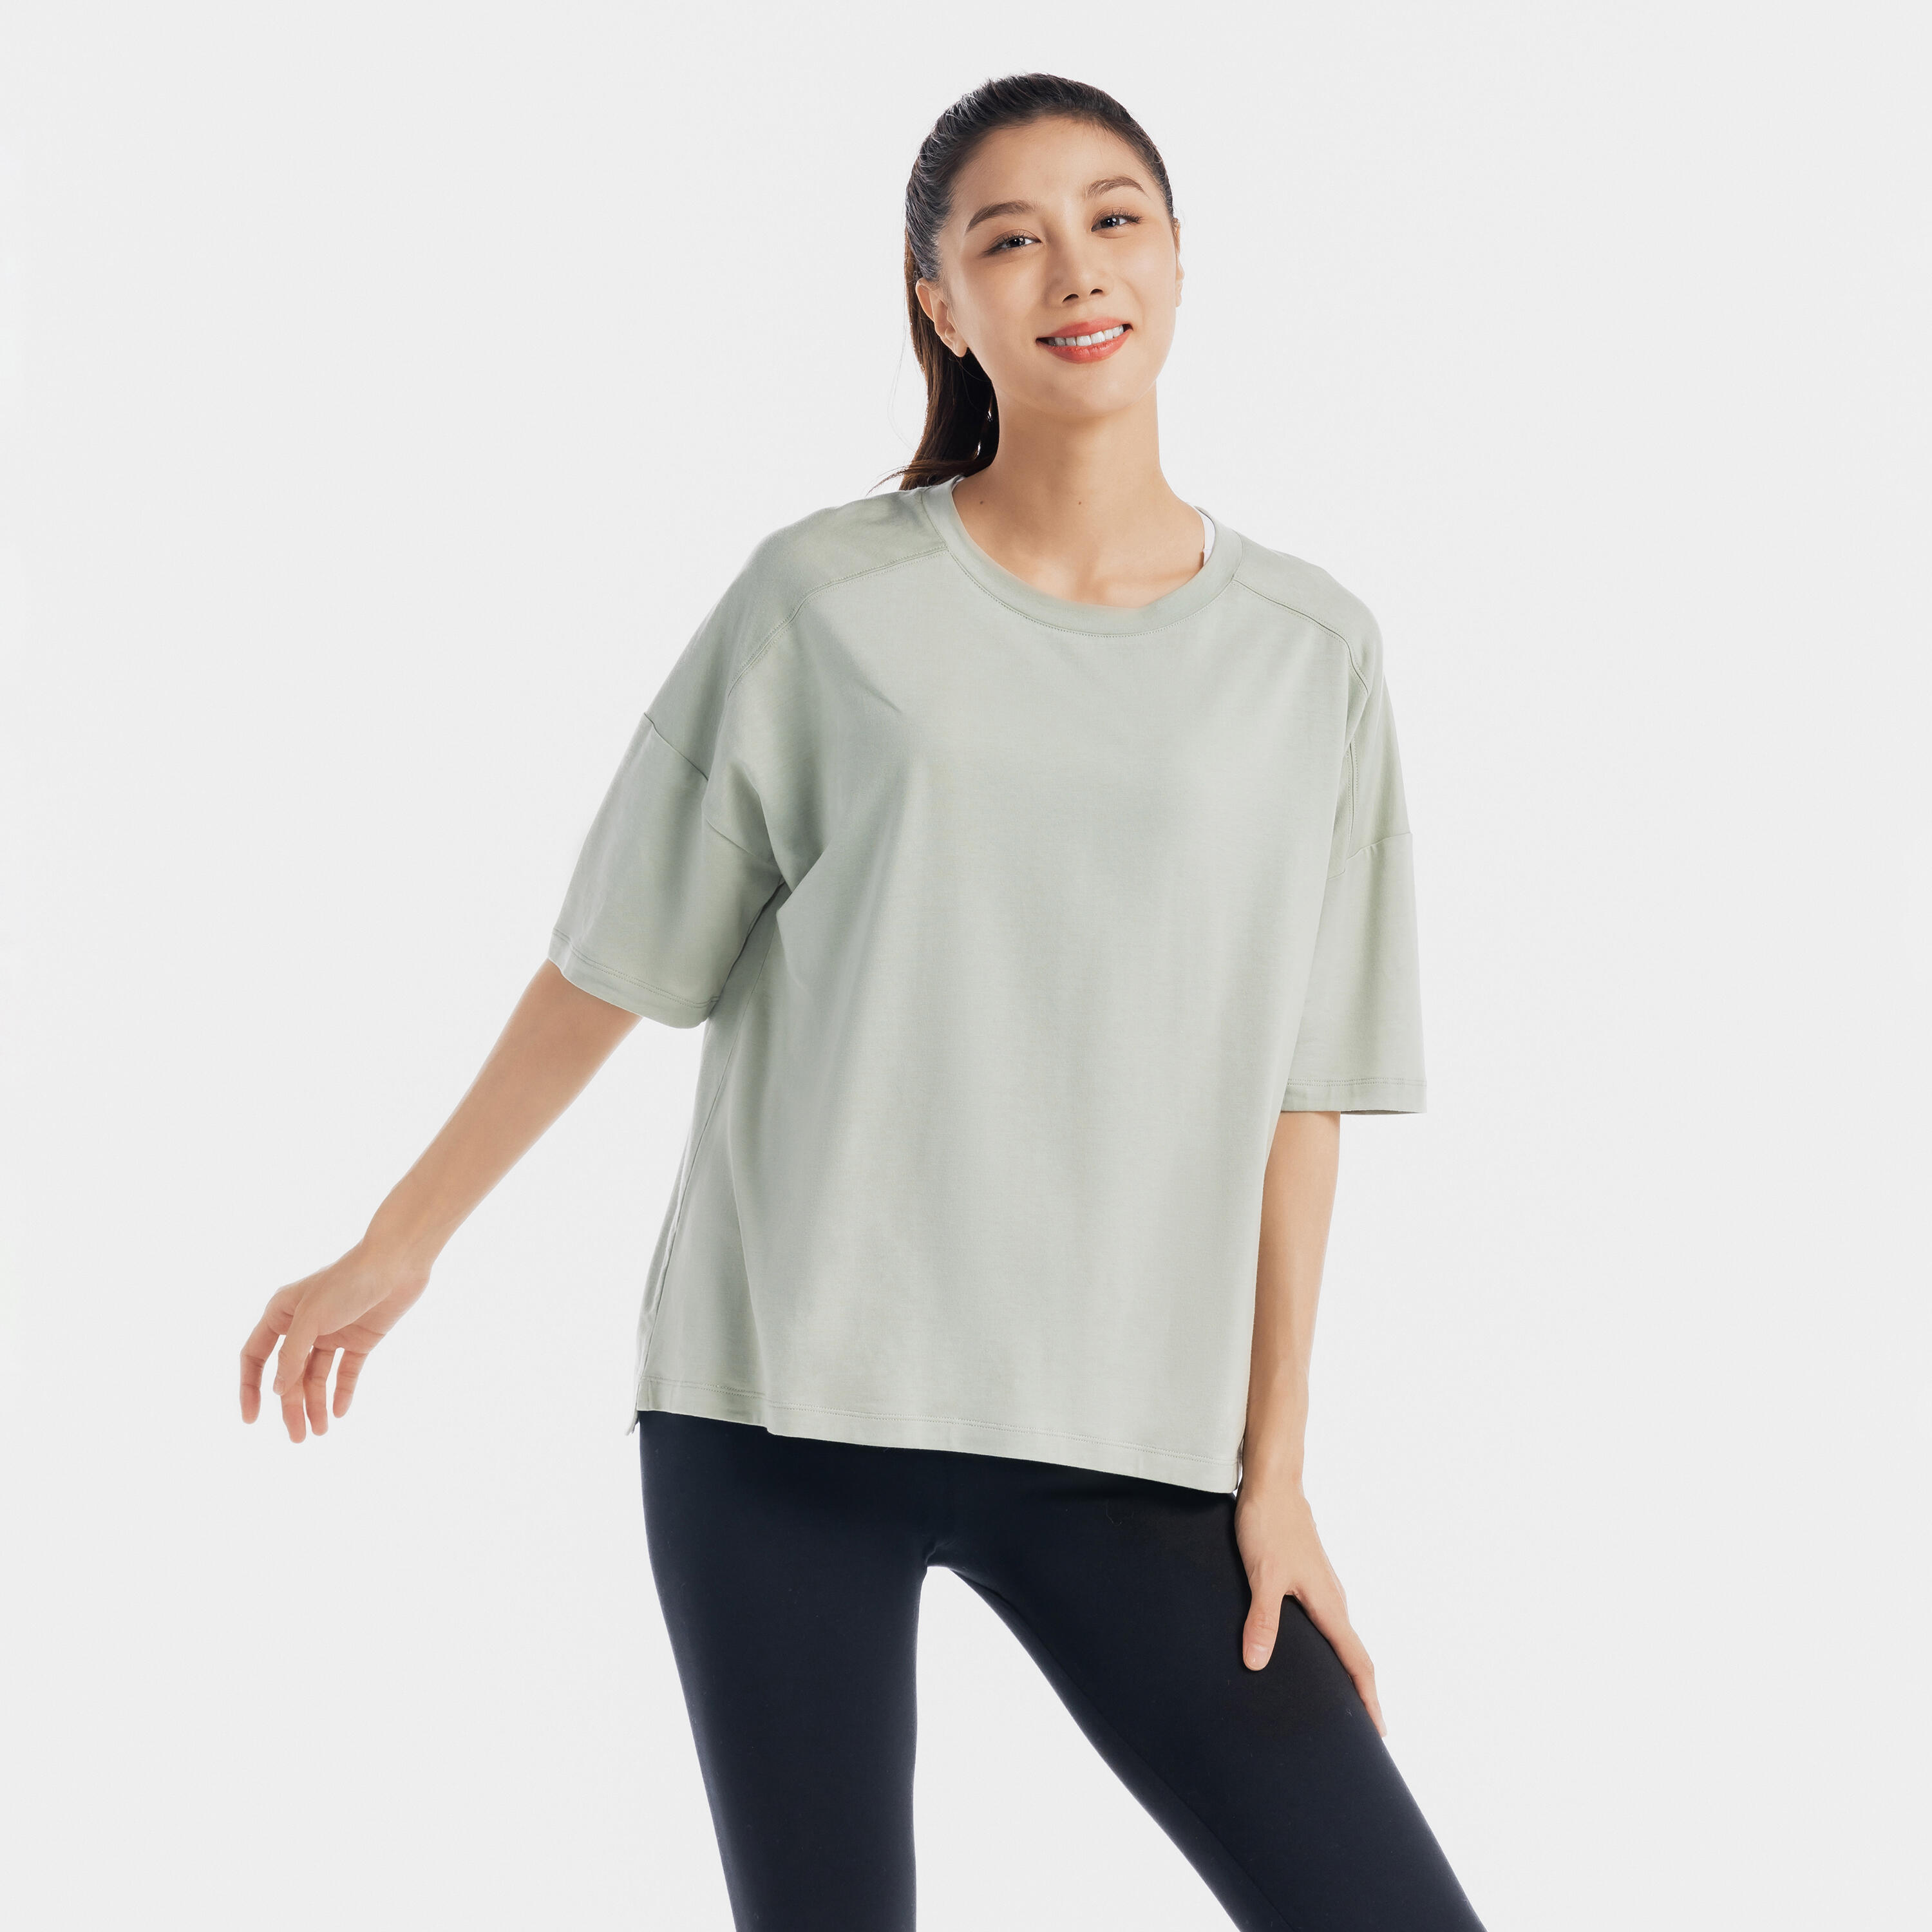 Women's Gym Cotton blend T-shirt regular fit-Burgundy